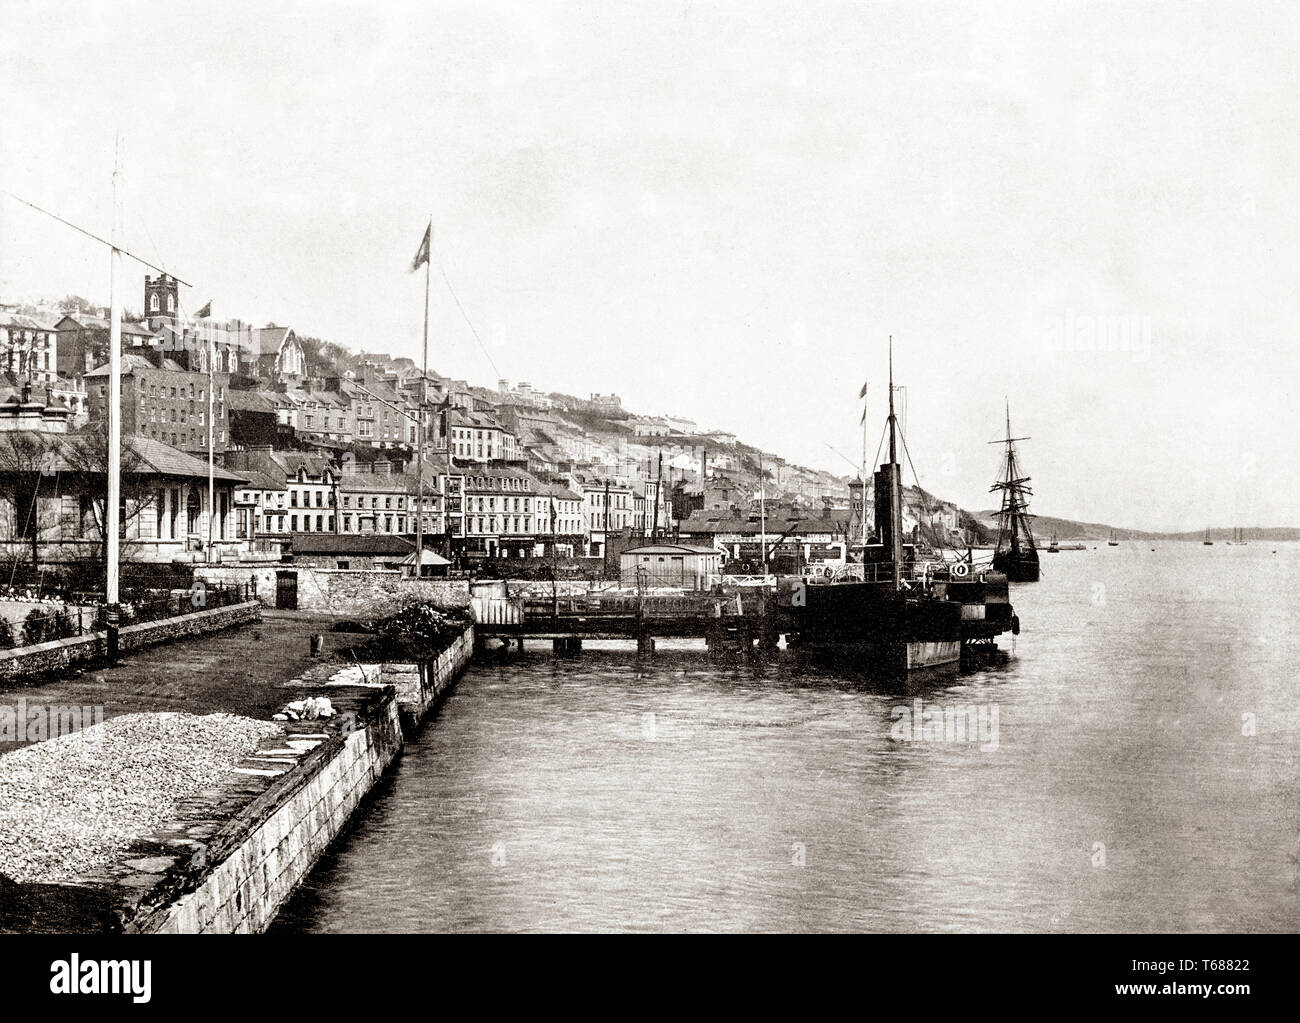 Jahrhundert Blick auf Queenstown, umbenannt in Cobh im Jahre 1920, ist eine Hafenstadt an der Südküste der Grafschaft Cork, Irland. Auf der Südseite des großen Insel im Hafen von Cork es auf seinen maritimen und Auswanderung Legacy in Verbindung gebracht mit der RMS Titanic, die Schiffe zur letzten vor seinem Untergang zieht. Stockfoto